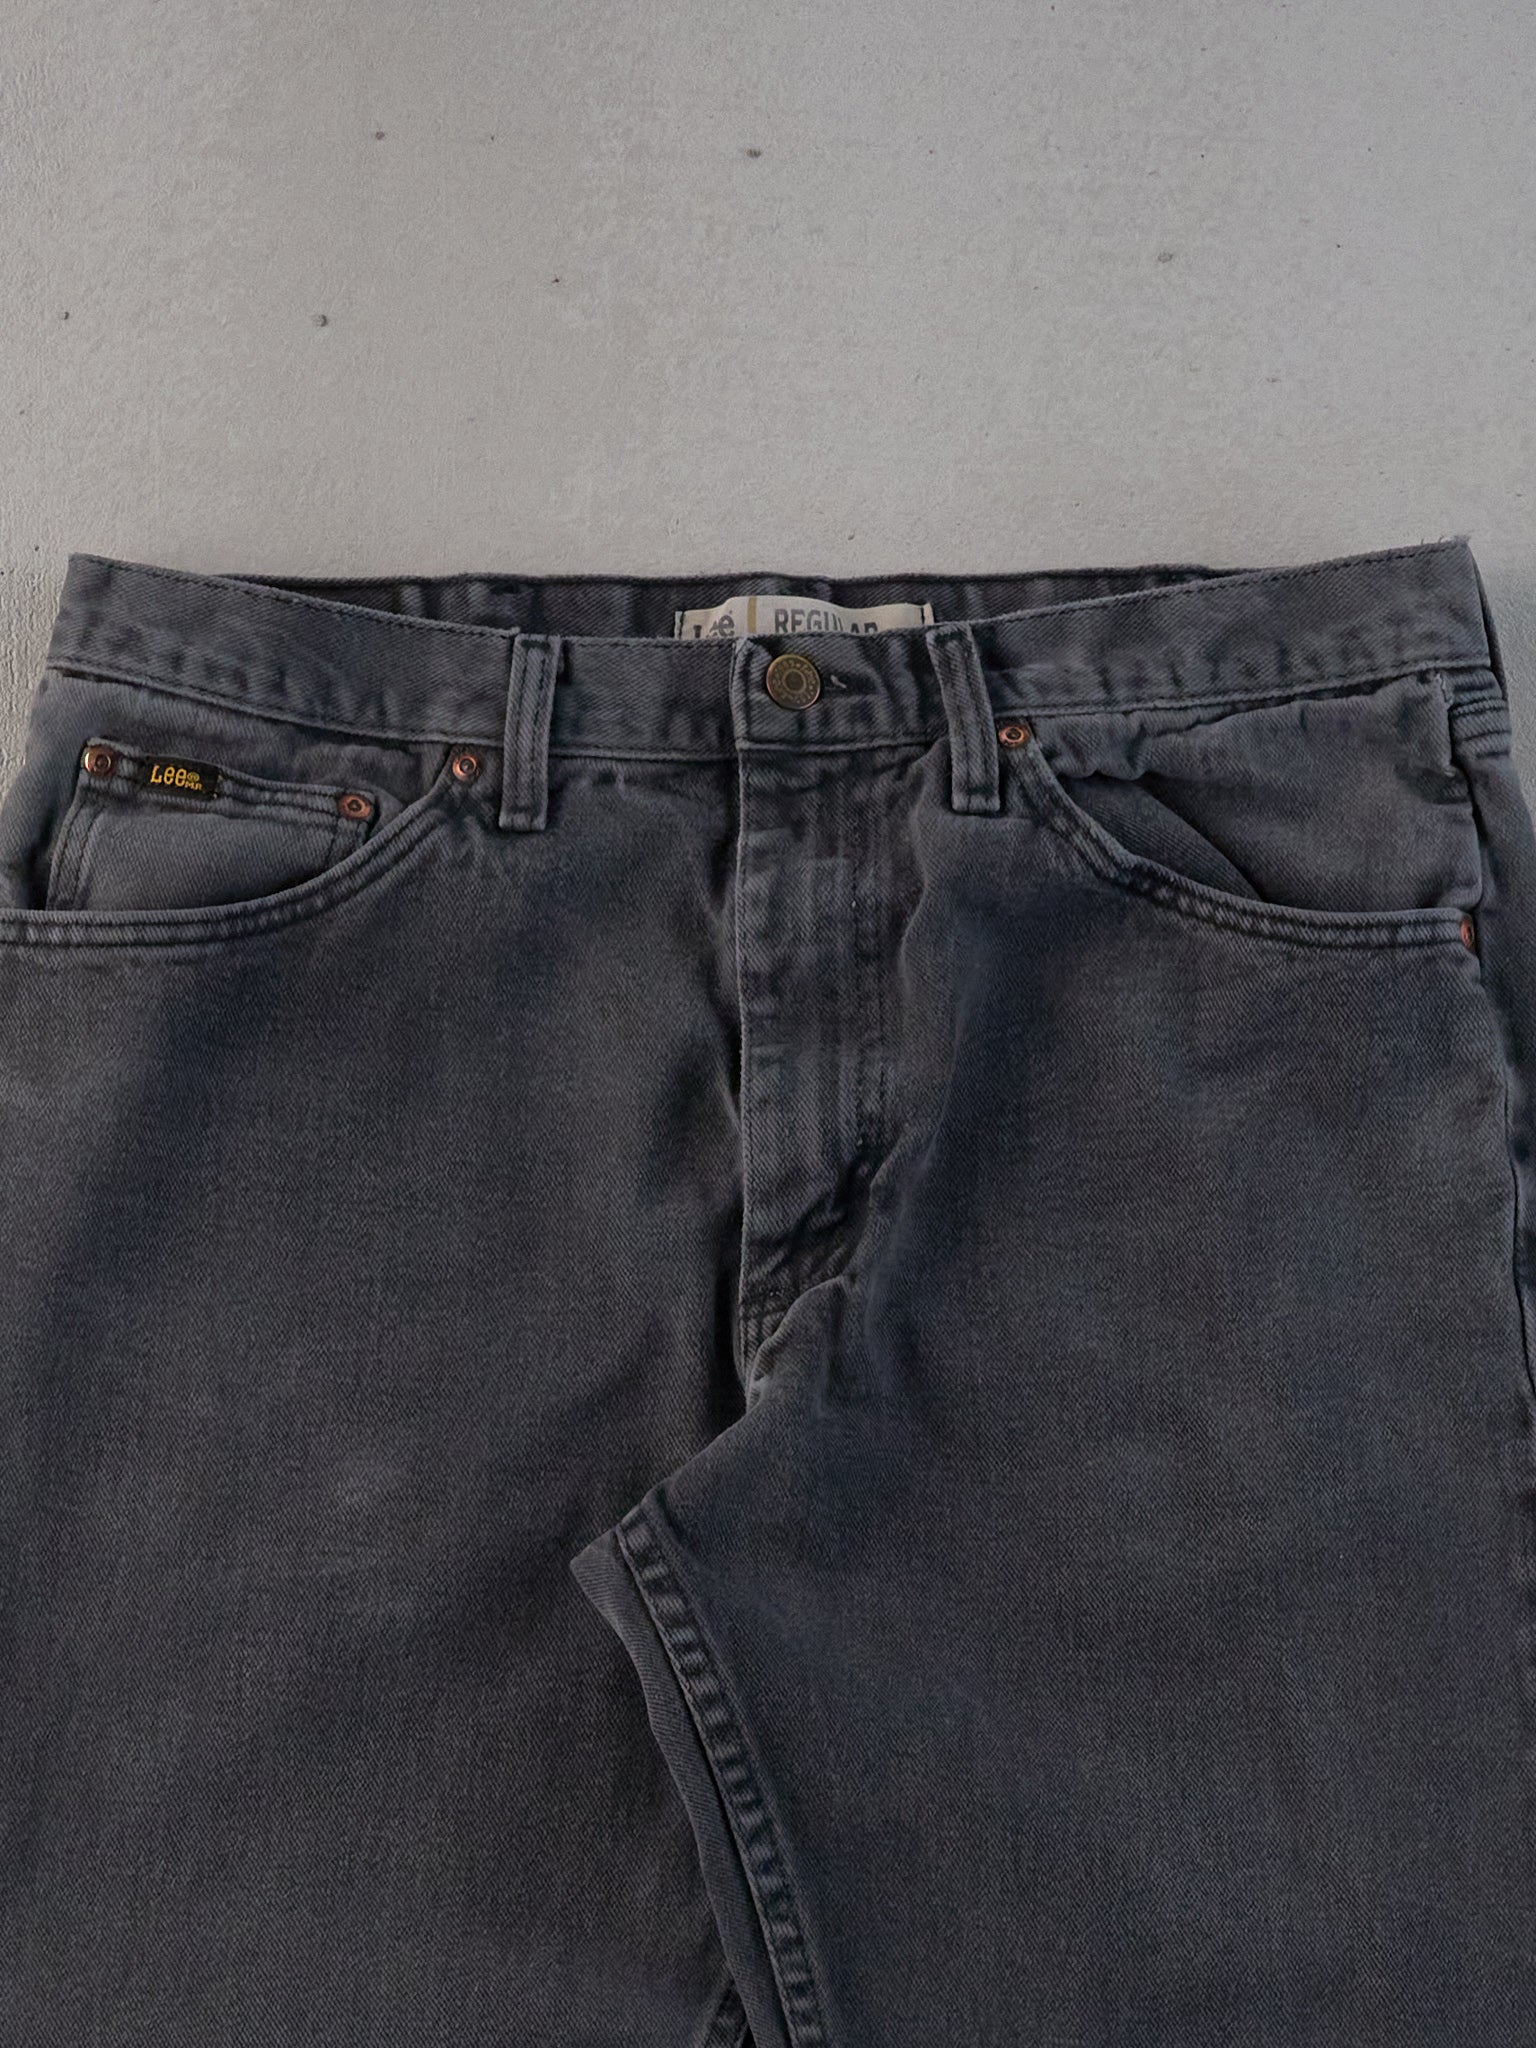 Vintage 90s Washed Grey Lee Denim Jeans (33x33)